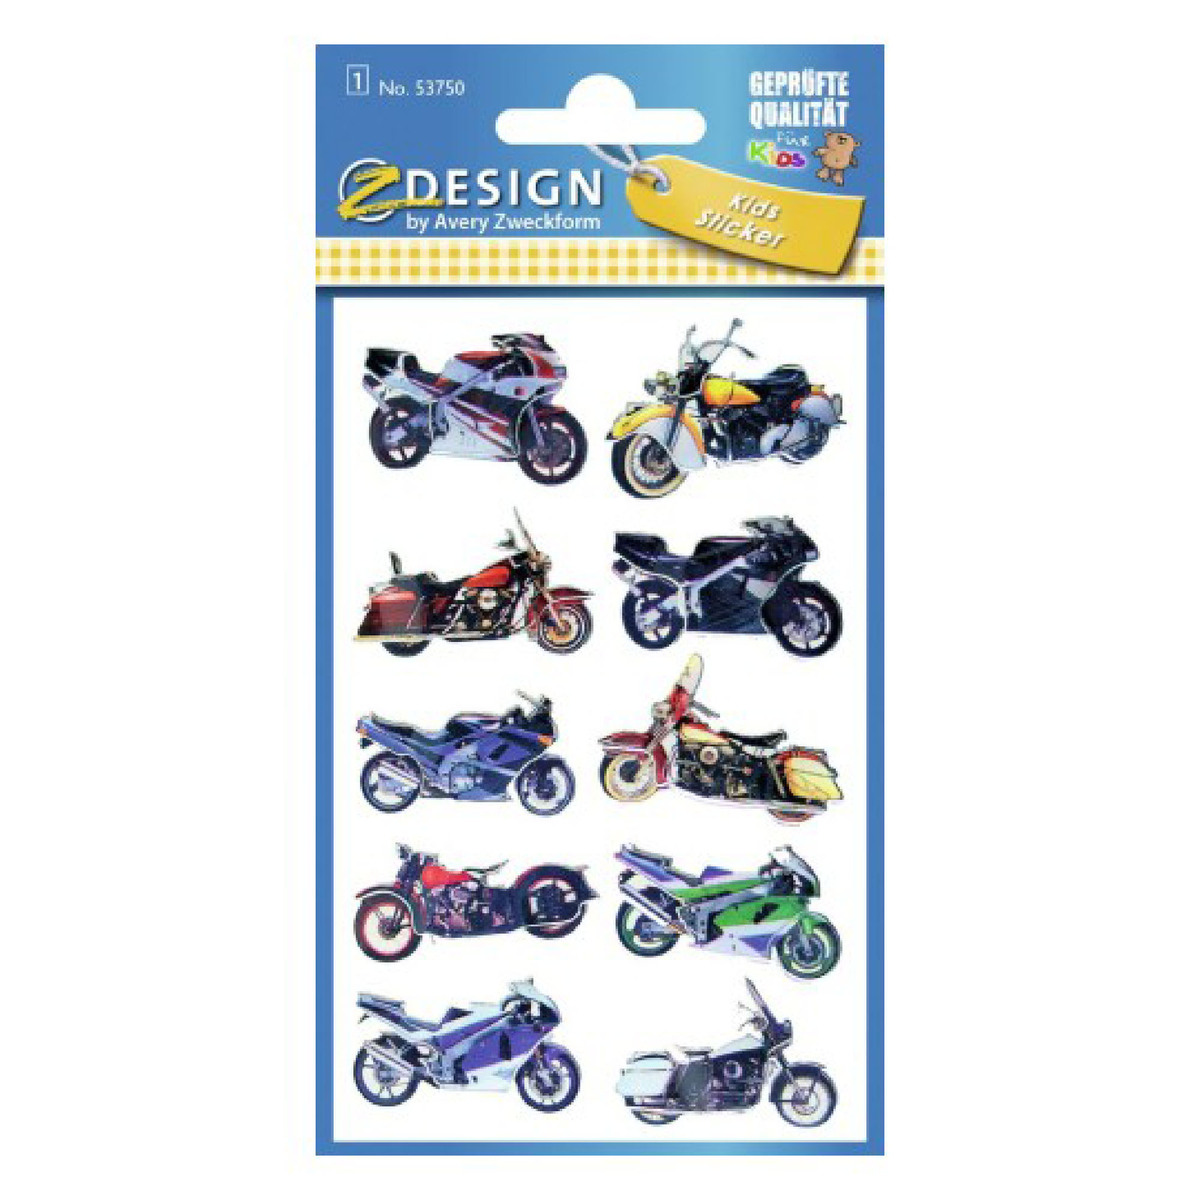 أفيري ملصقات ثلاثية الابعاد لدراجات الاطفال النارية ، 76 ملم × 120 ملم ، 53750